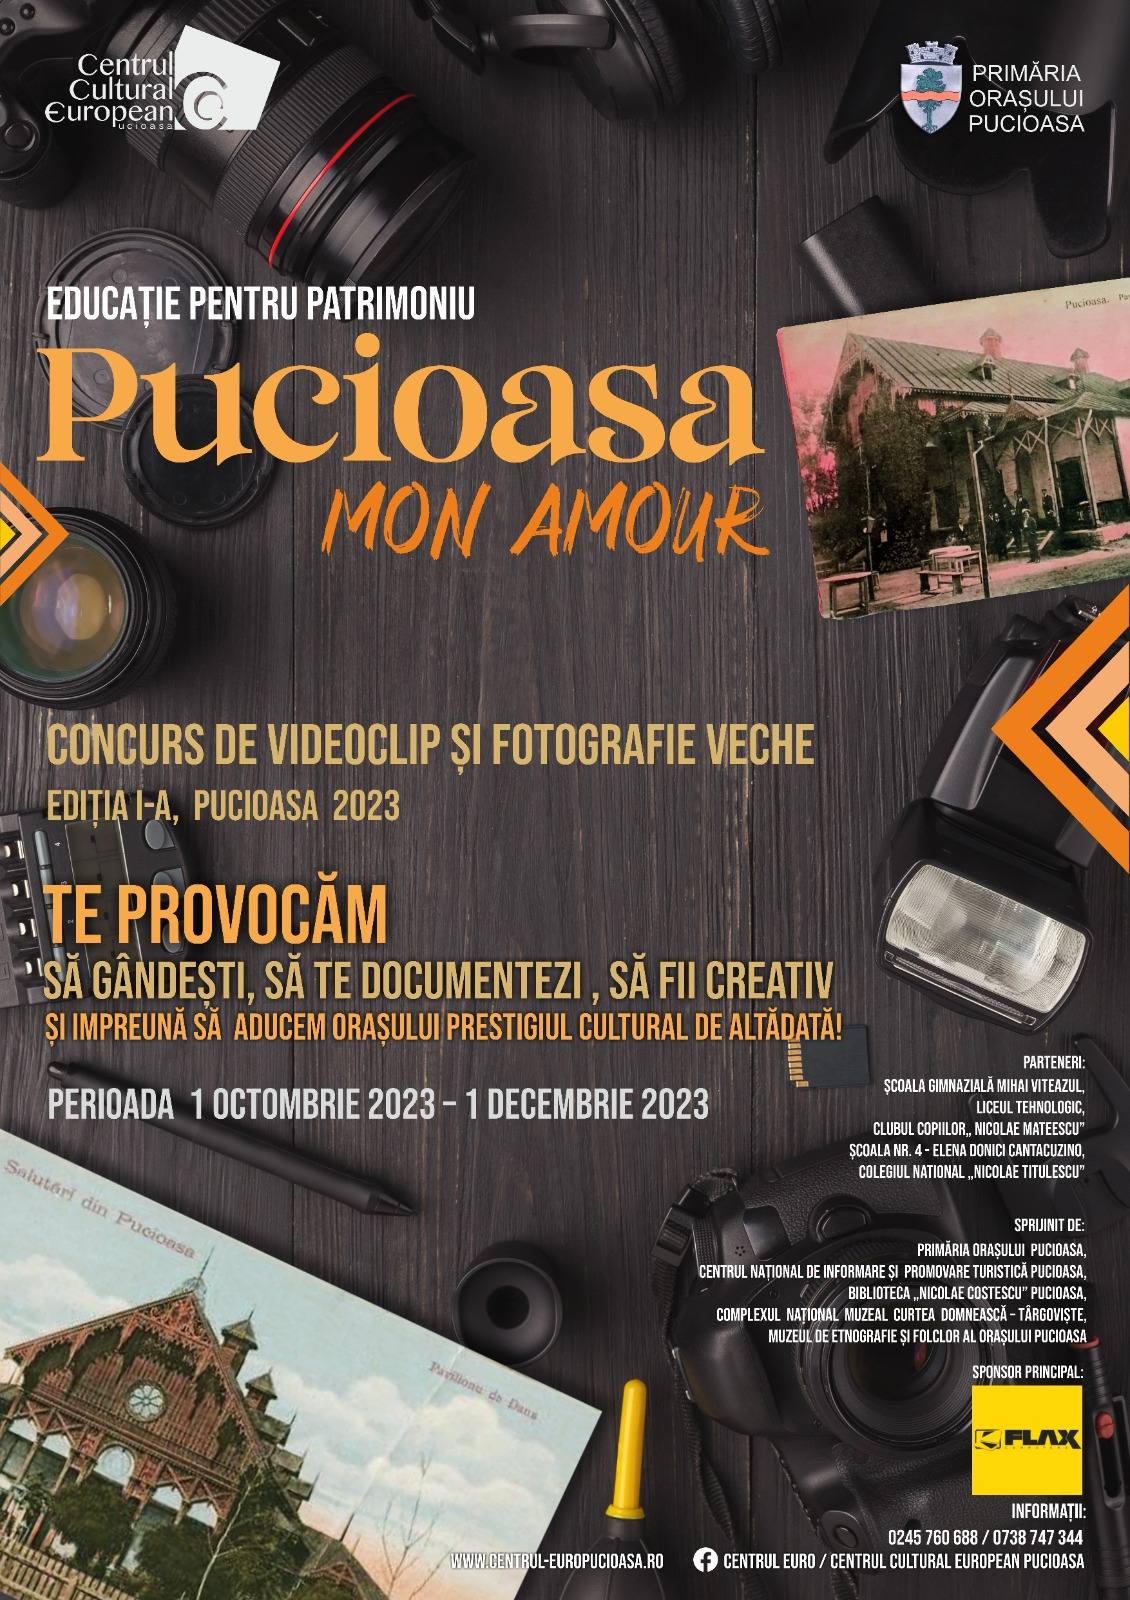 You are currently viewing Concursul „Pucioasa, mon amour”, invitație la a readuce orașul la prestigiul cultural de odinioară